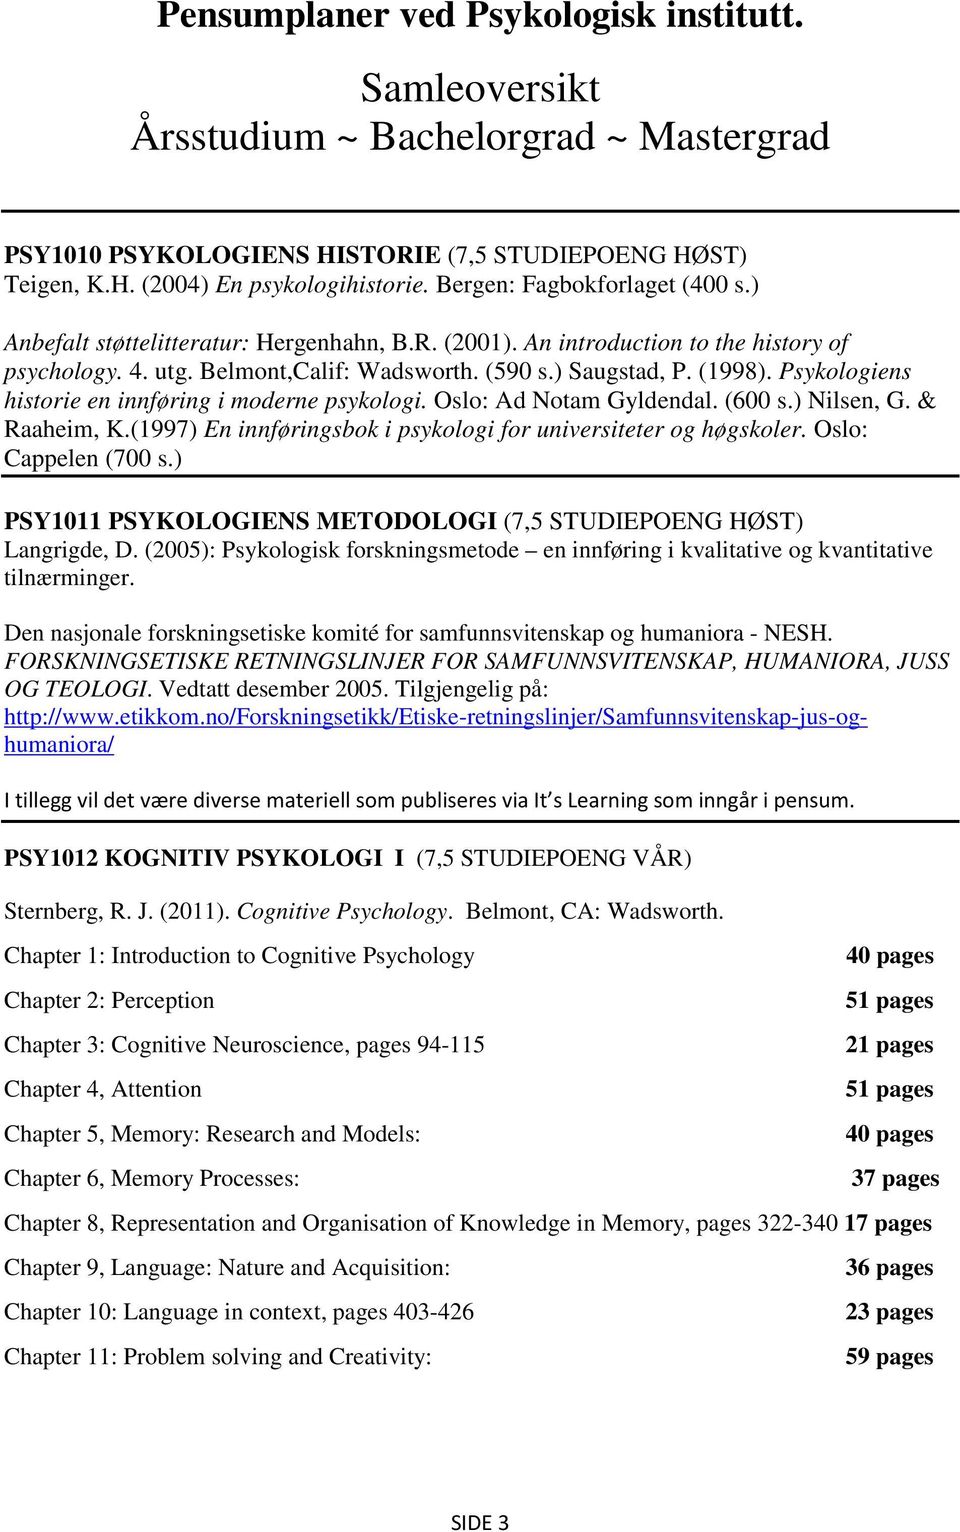 Psykologiens historie en innføring i moderne psykologi. Oslo: Ad Notam Gyldendal. (600 s.) Nilsen, G. & Raaheim, K.(1997) En innføringsbok i psykologi for universiteter og høgskoler.